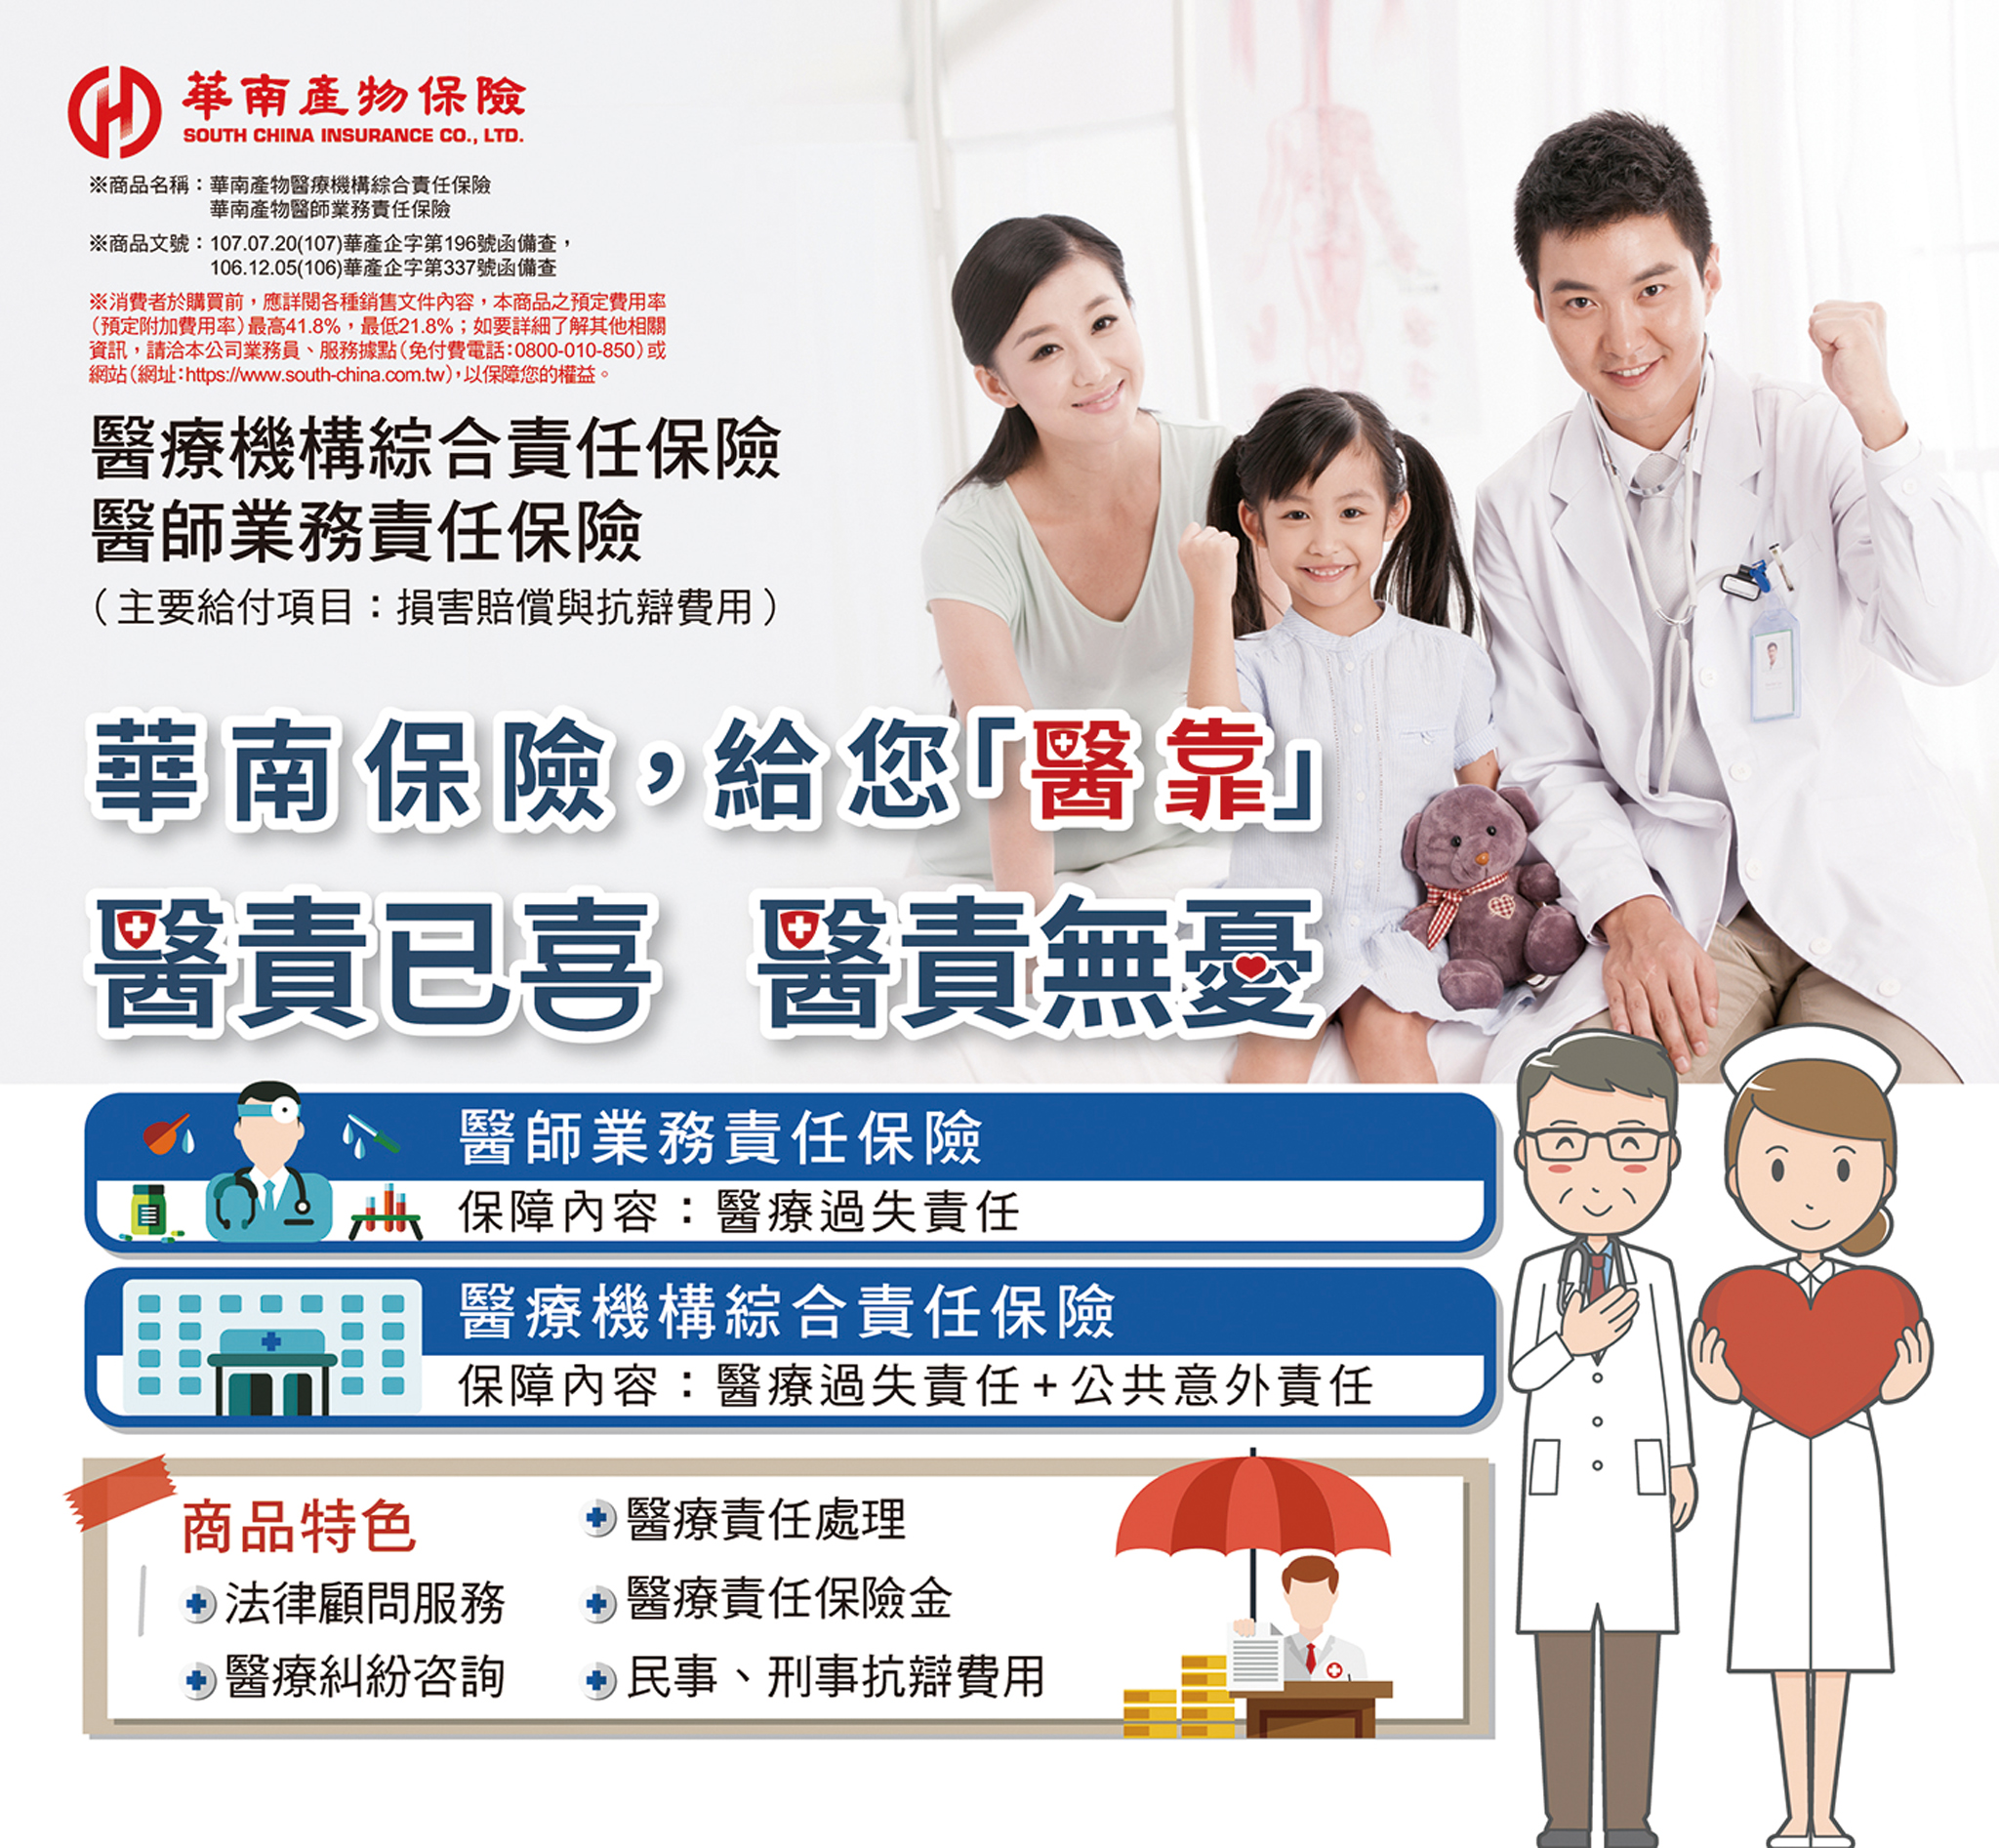 華南產險提供的醫責險保障相當充足，可轉嫁因醫療過失導致的賠償責任。